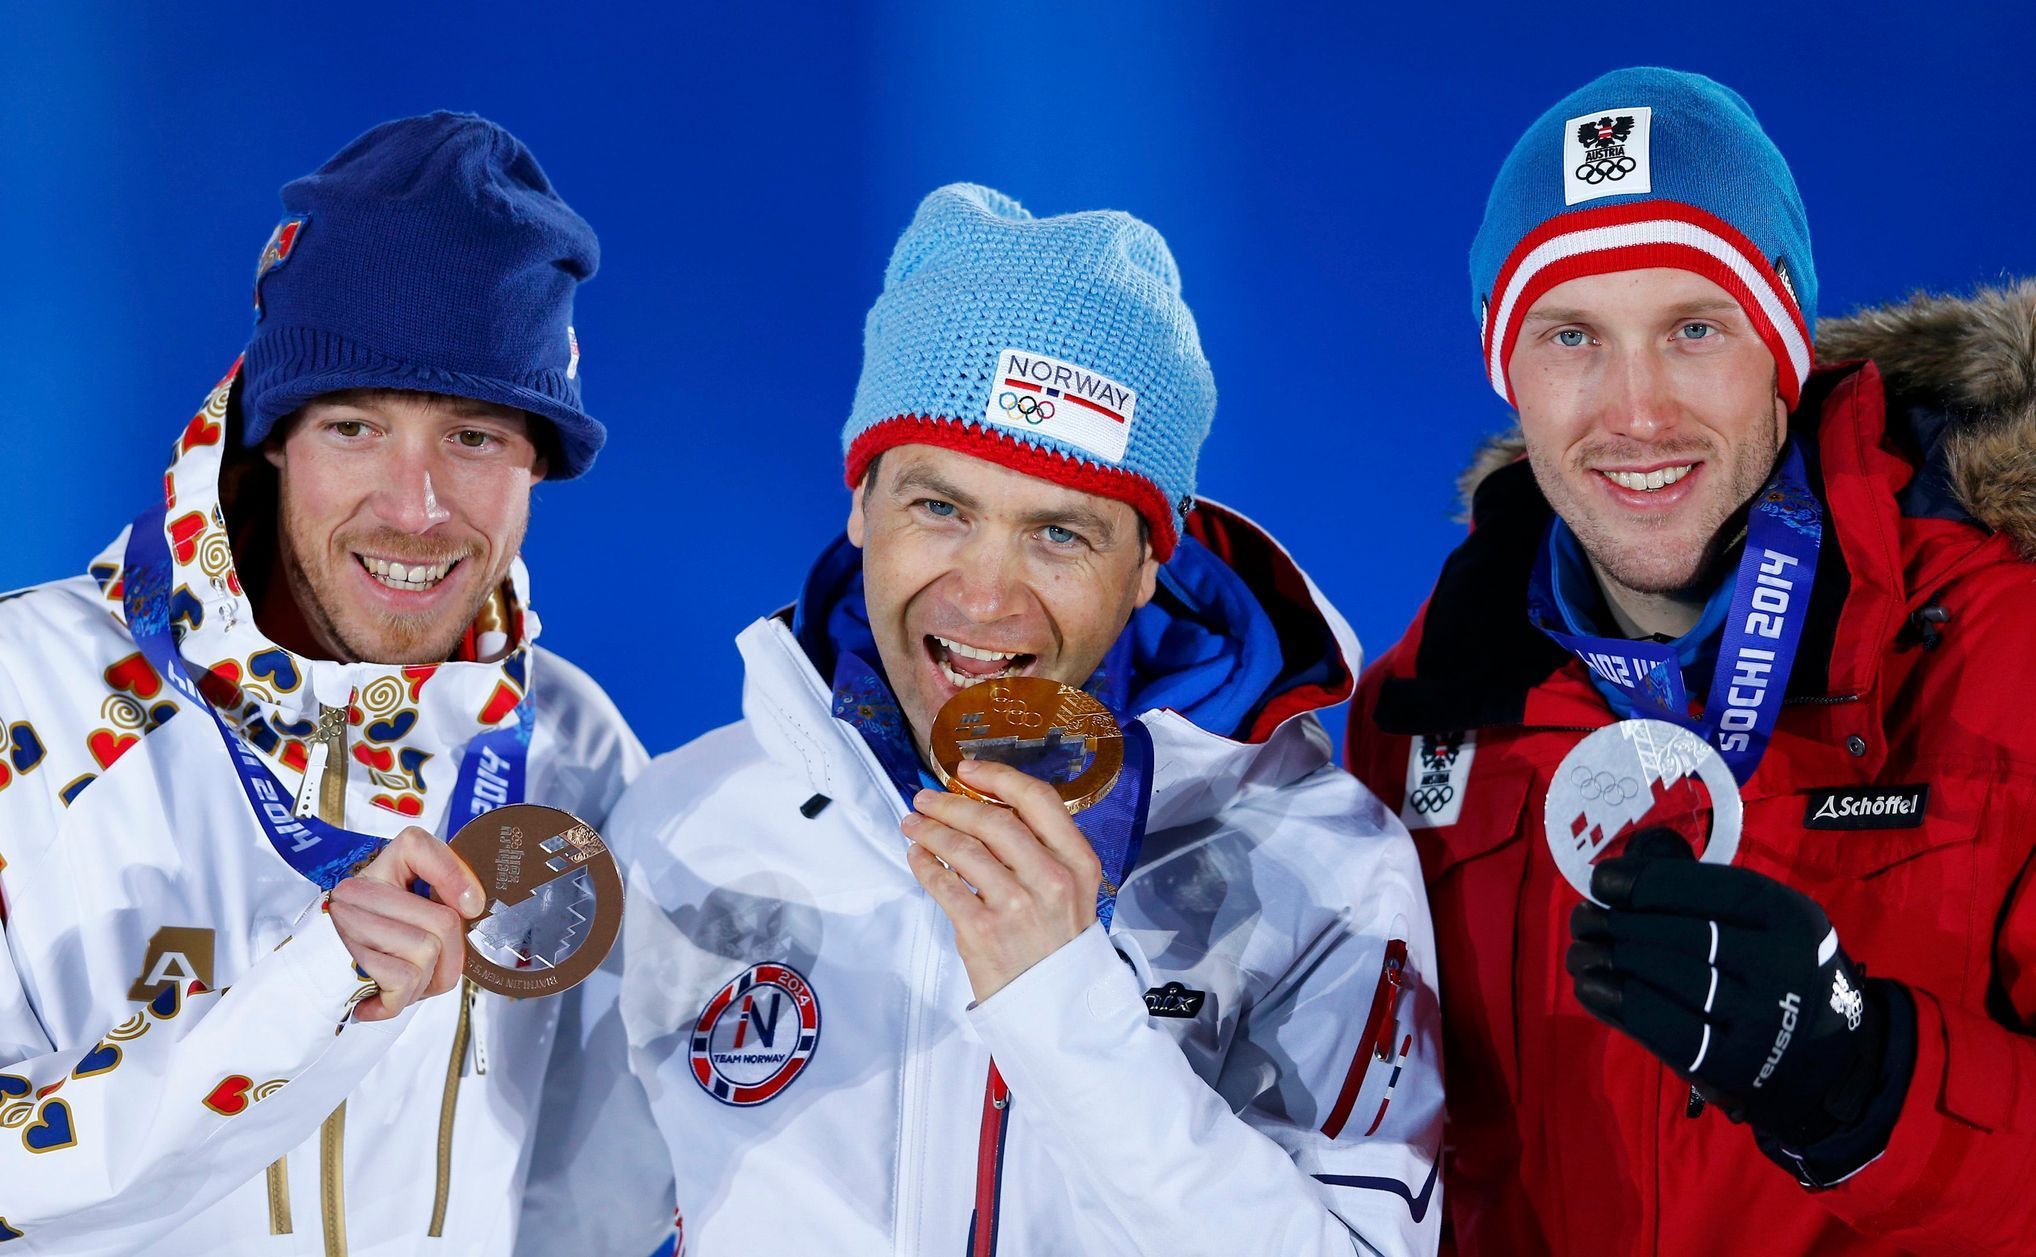 Soči 2014: biatlonisté Jaroslav Soukup, Ole Einar Björndalen a Dominik Landertinger s medailí ze sprintu